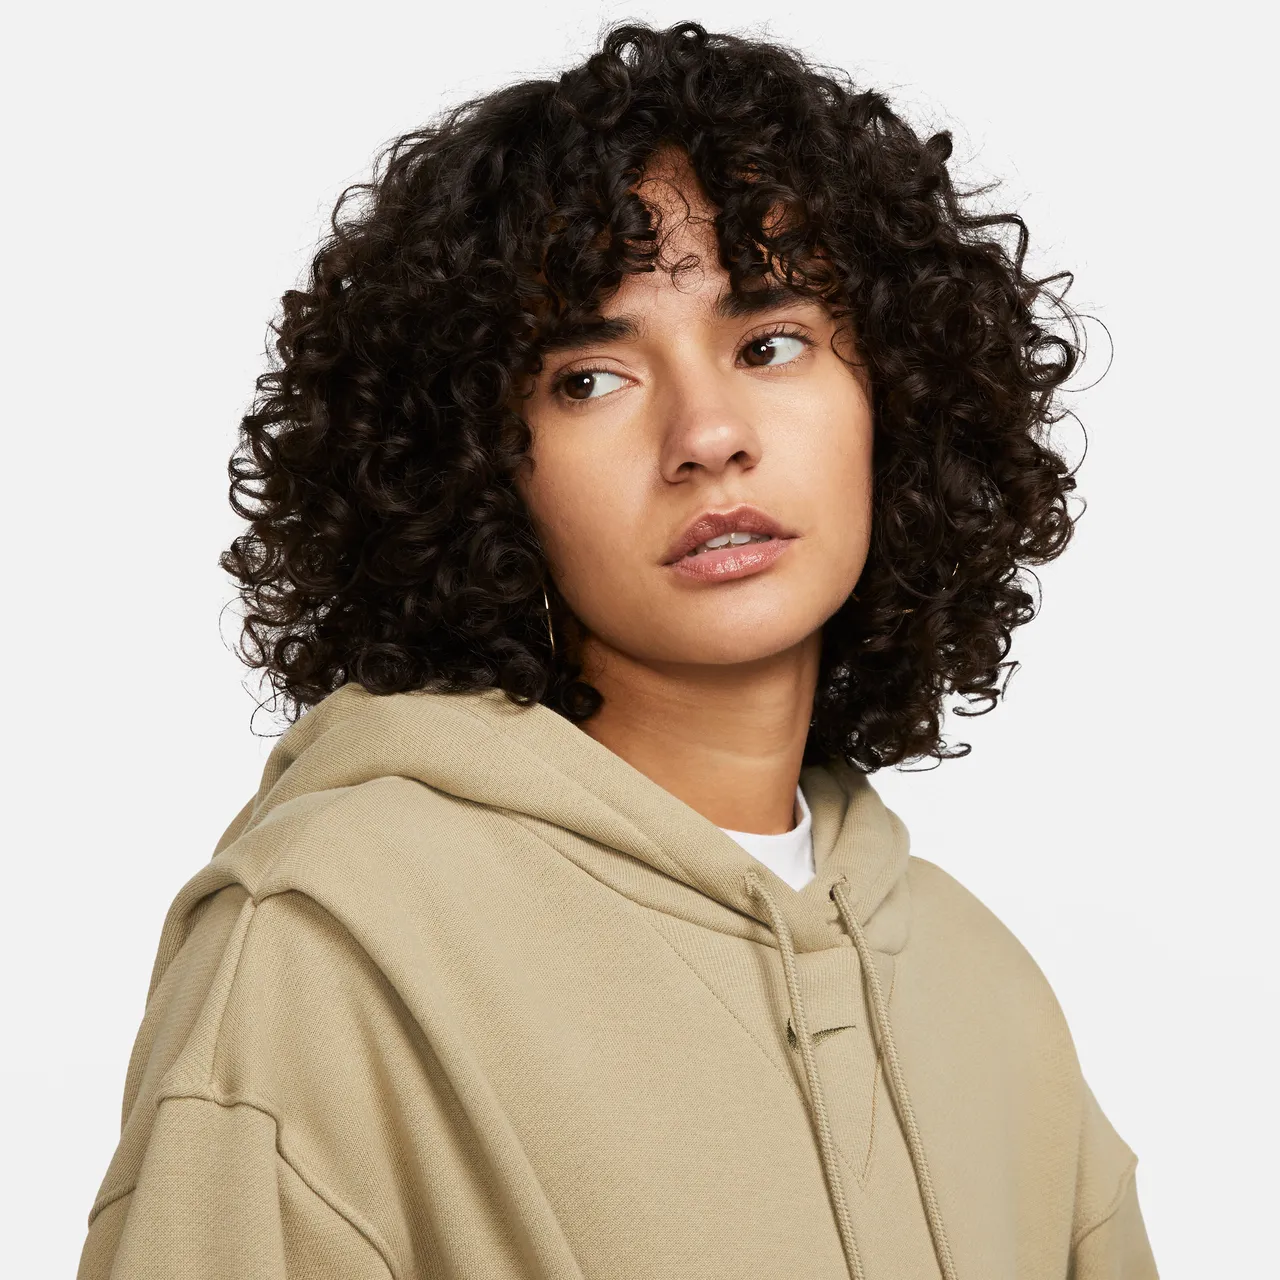 Nike Sportswear Modern Fleece Oversized hoodie van sweatstof voor dames - Bruin